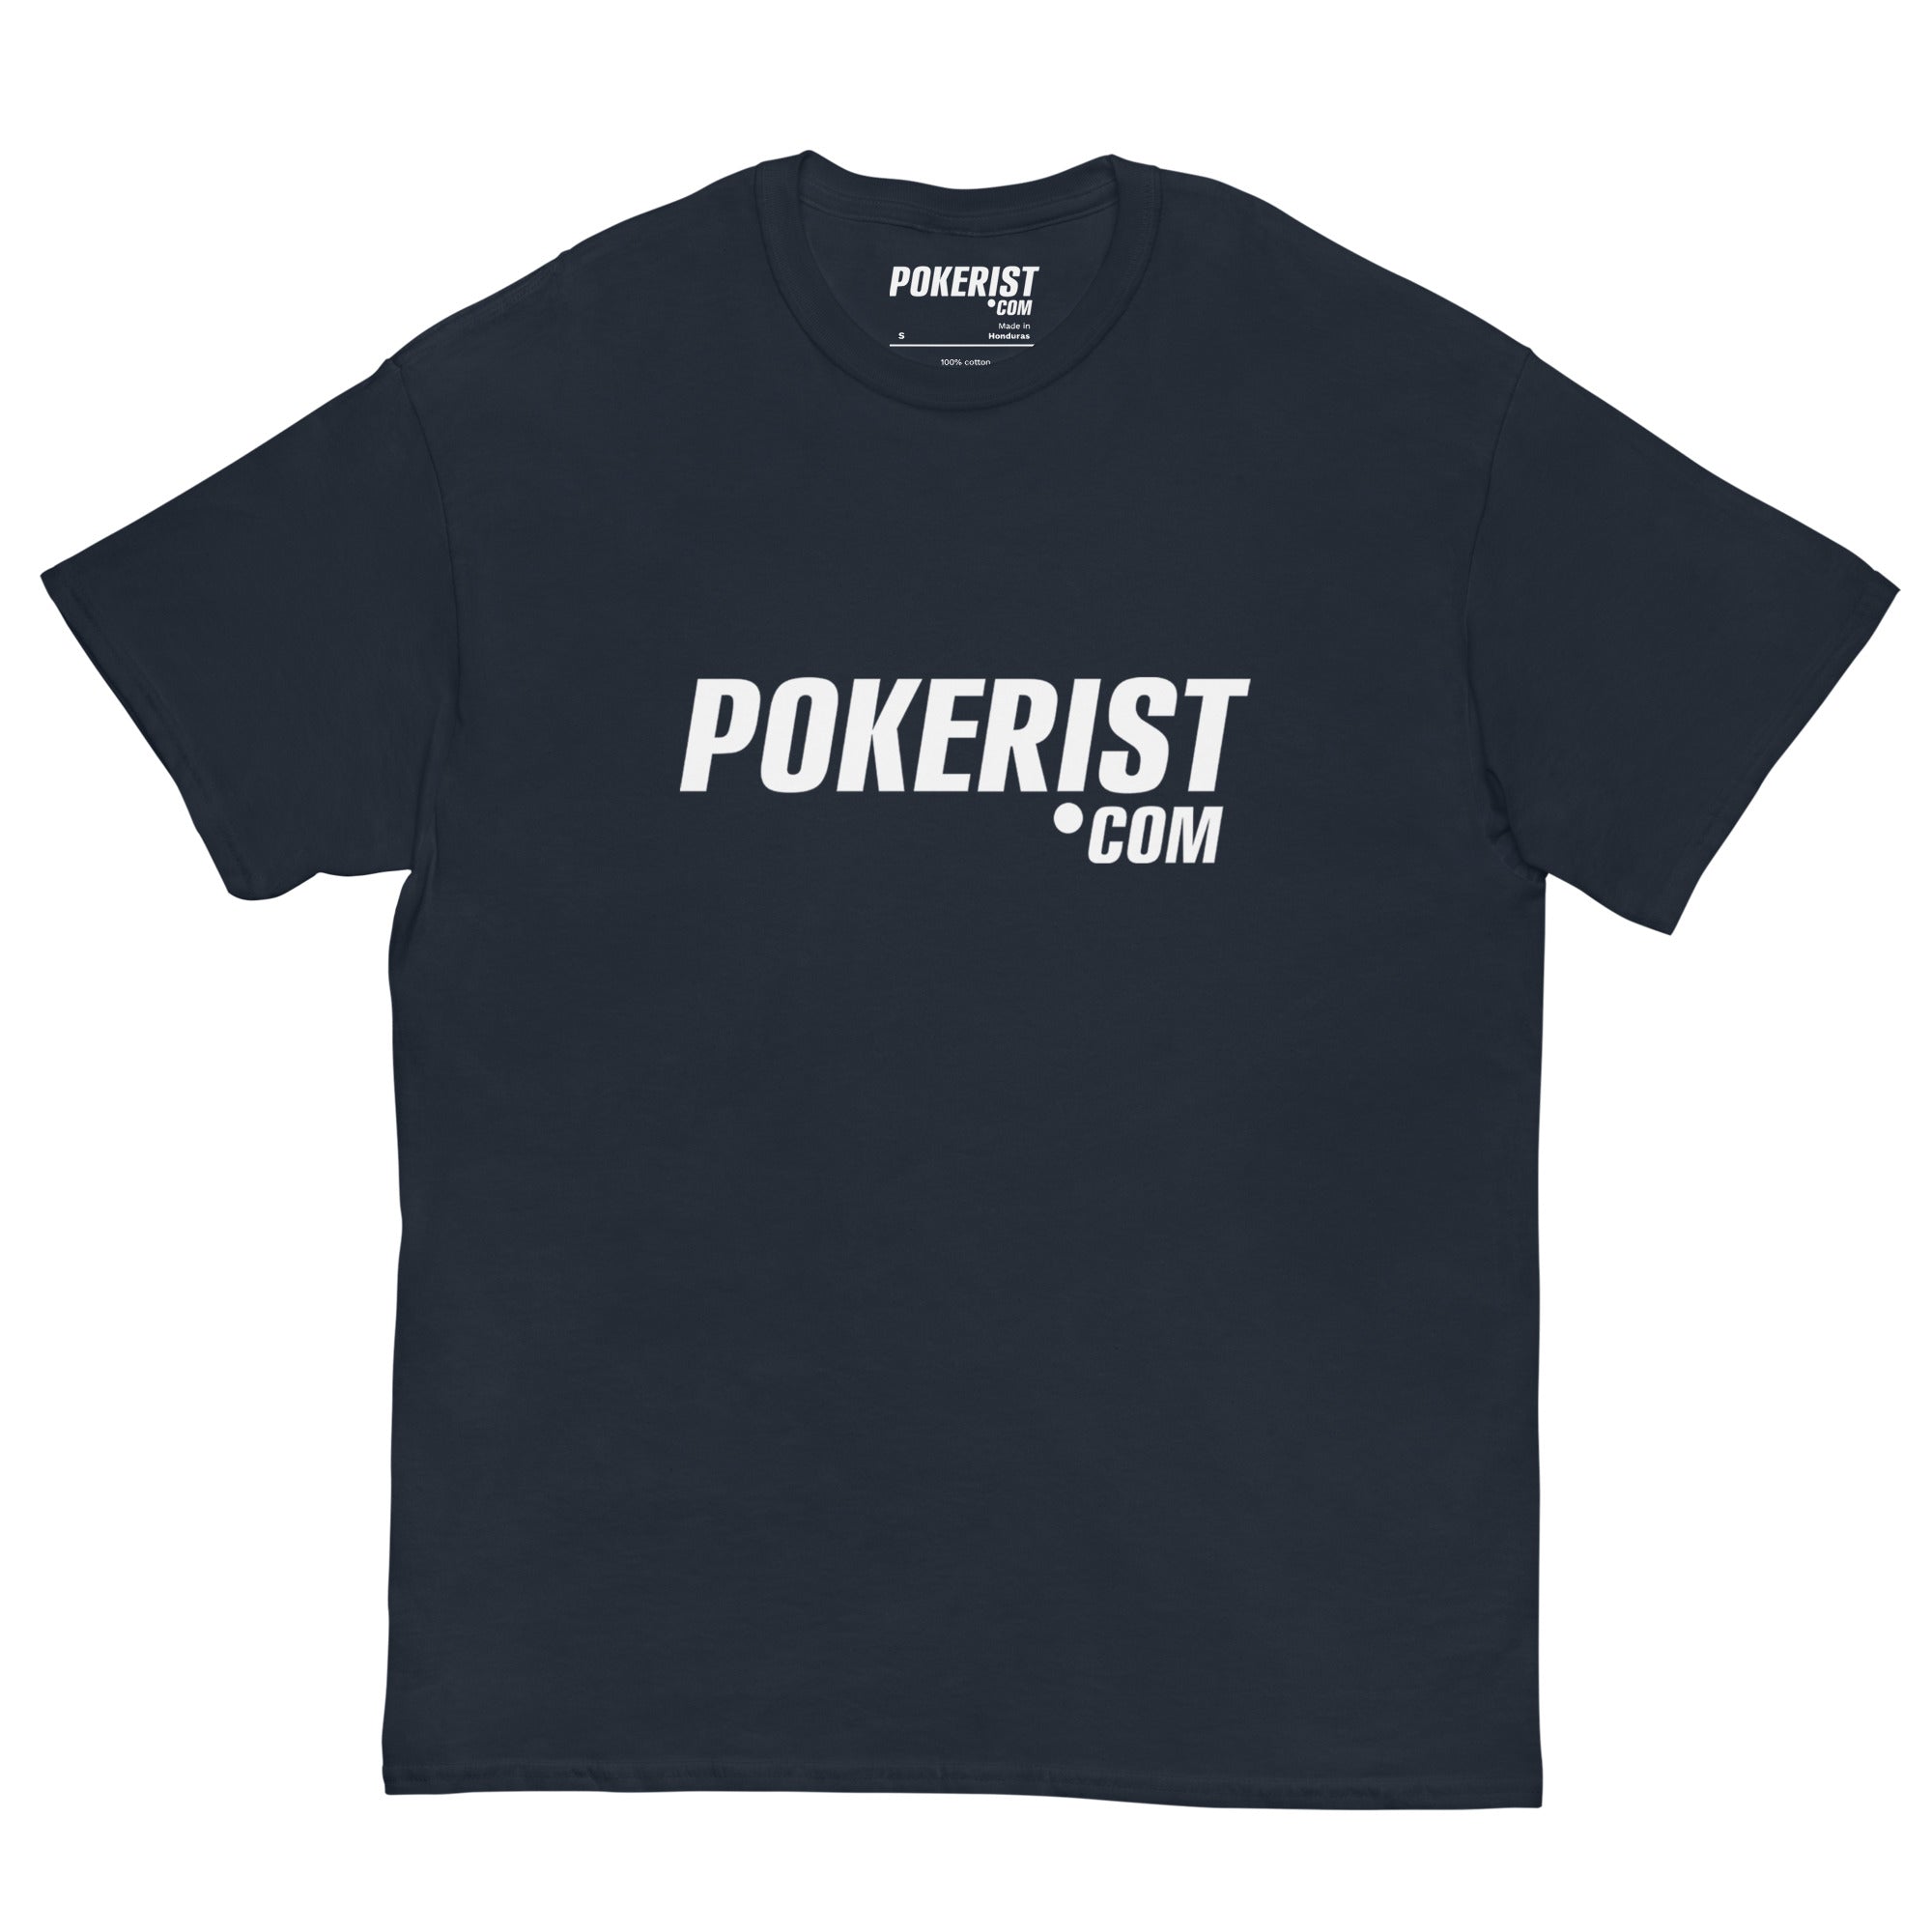 Pokerist 2.0 - Men's classic tee - Pokerist